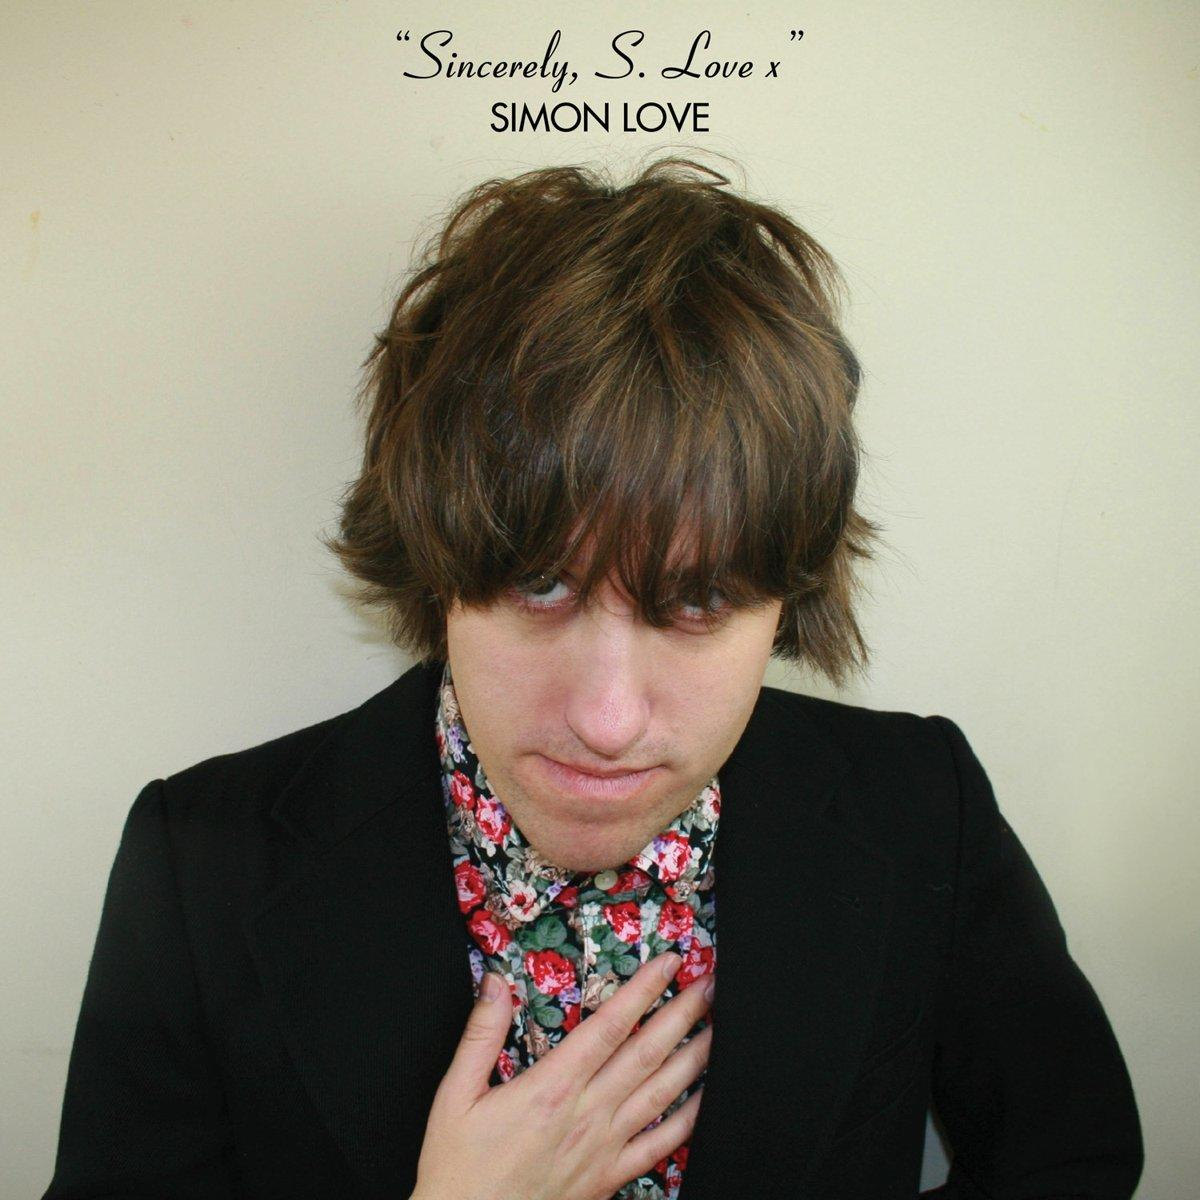 Simon Love - Sincerley,S.Love - (Vinyl) x